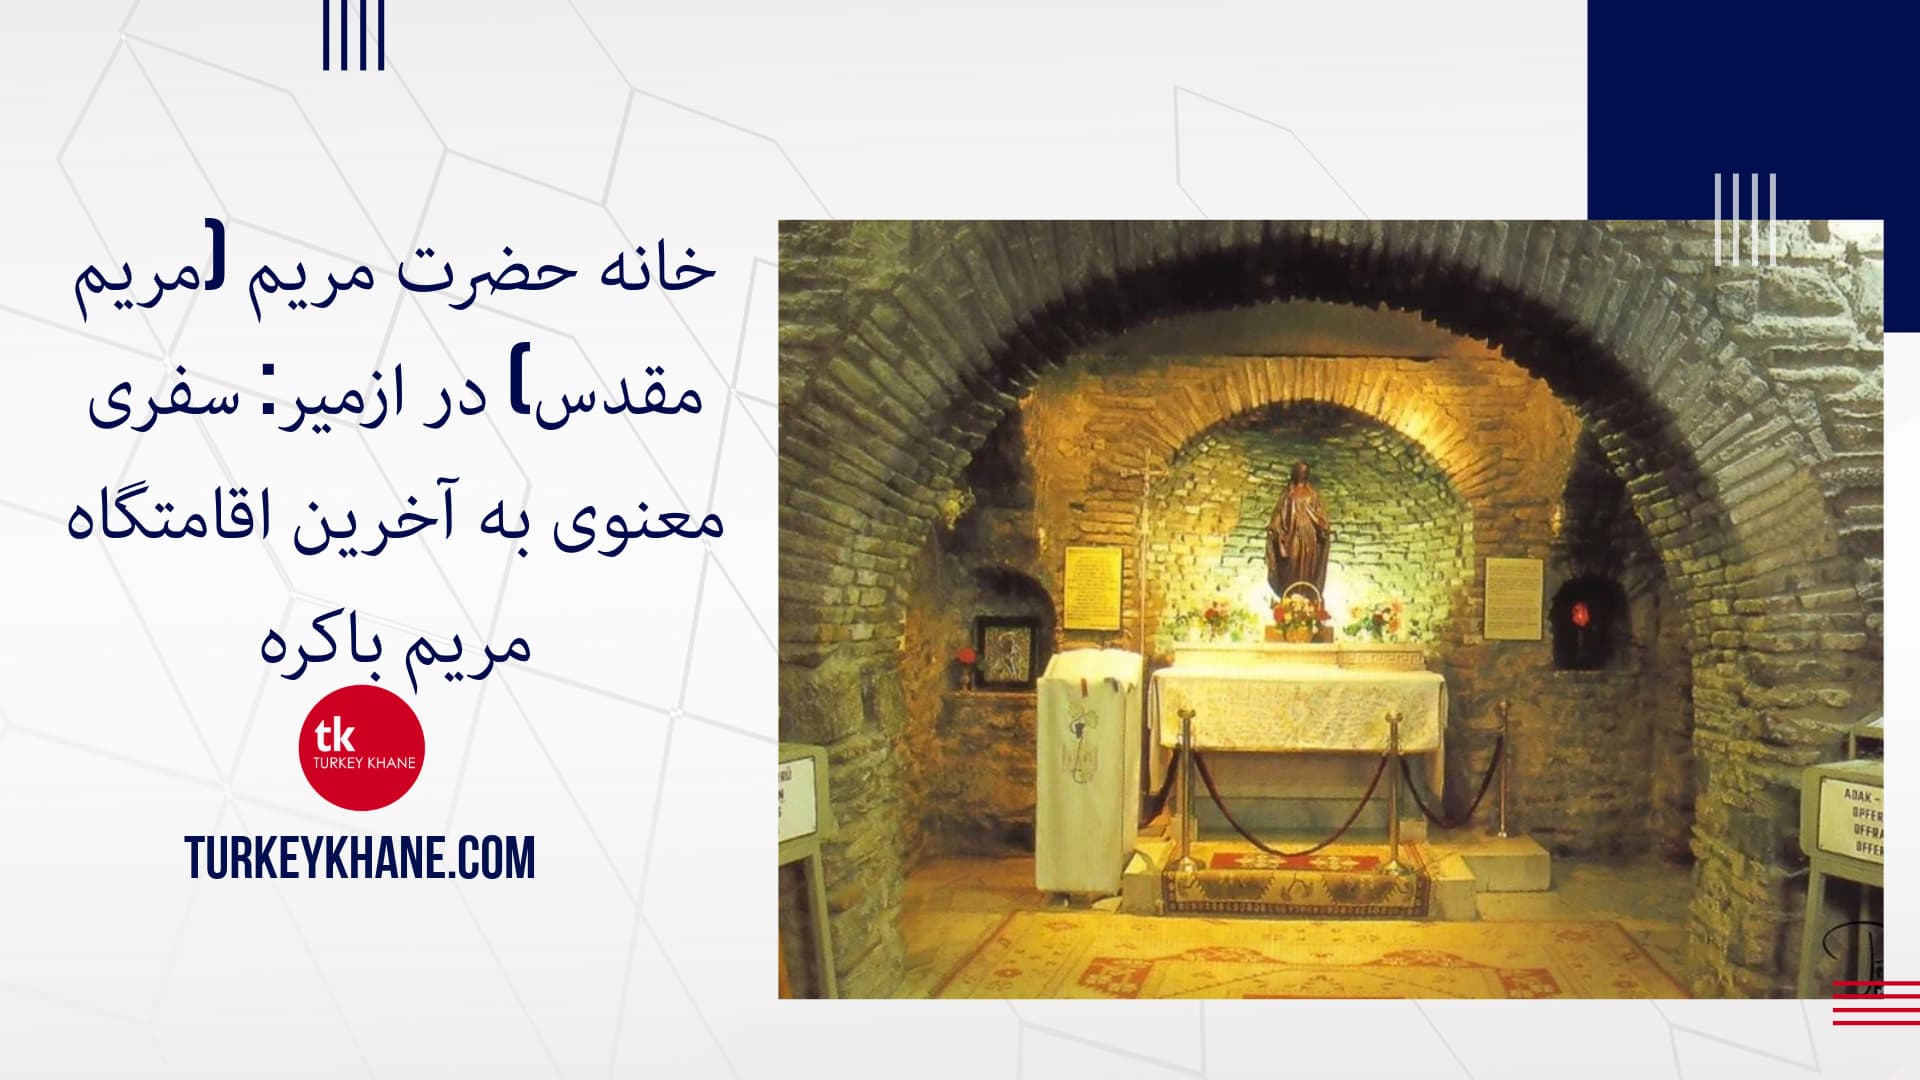 خانه حضرت مریم (مریم مقدس) در ازمیر: سفری معنوی به آخرین اقامتگاه مریم باکره